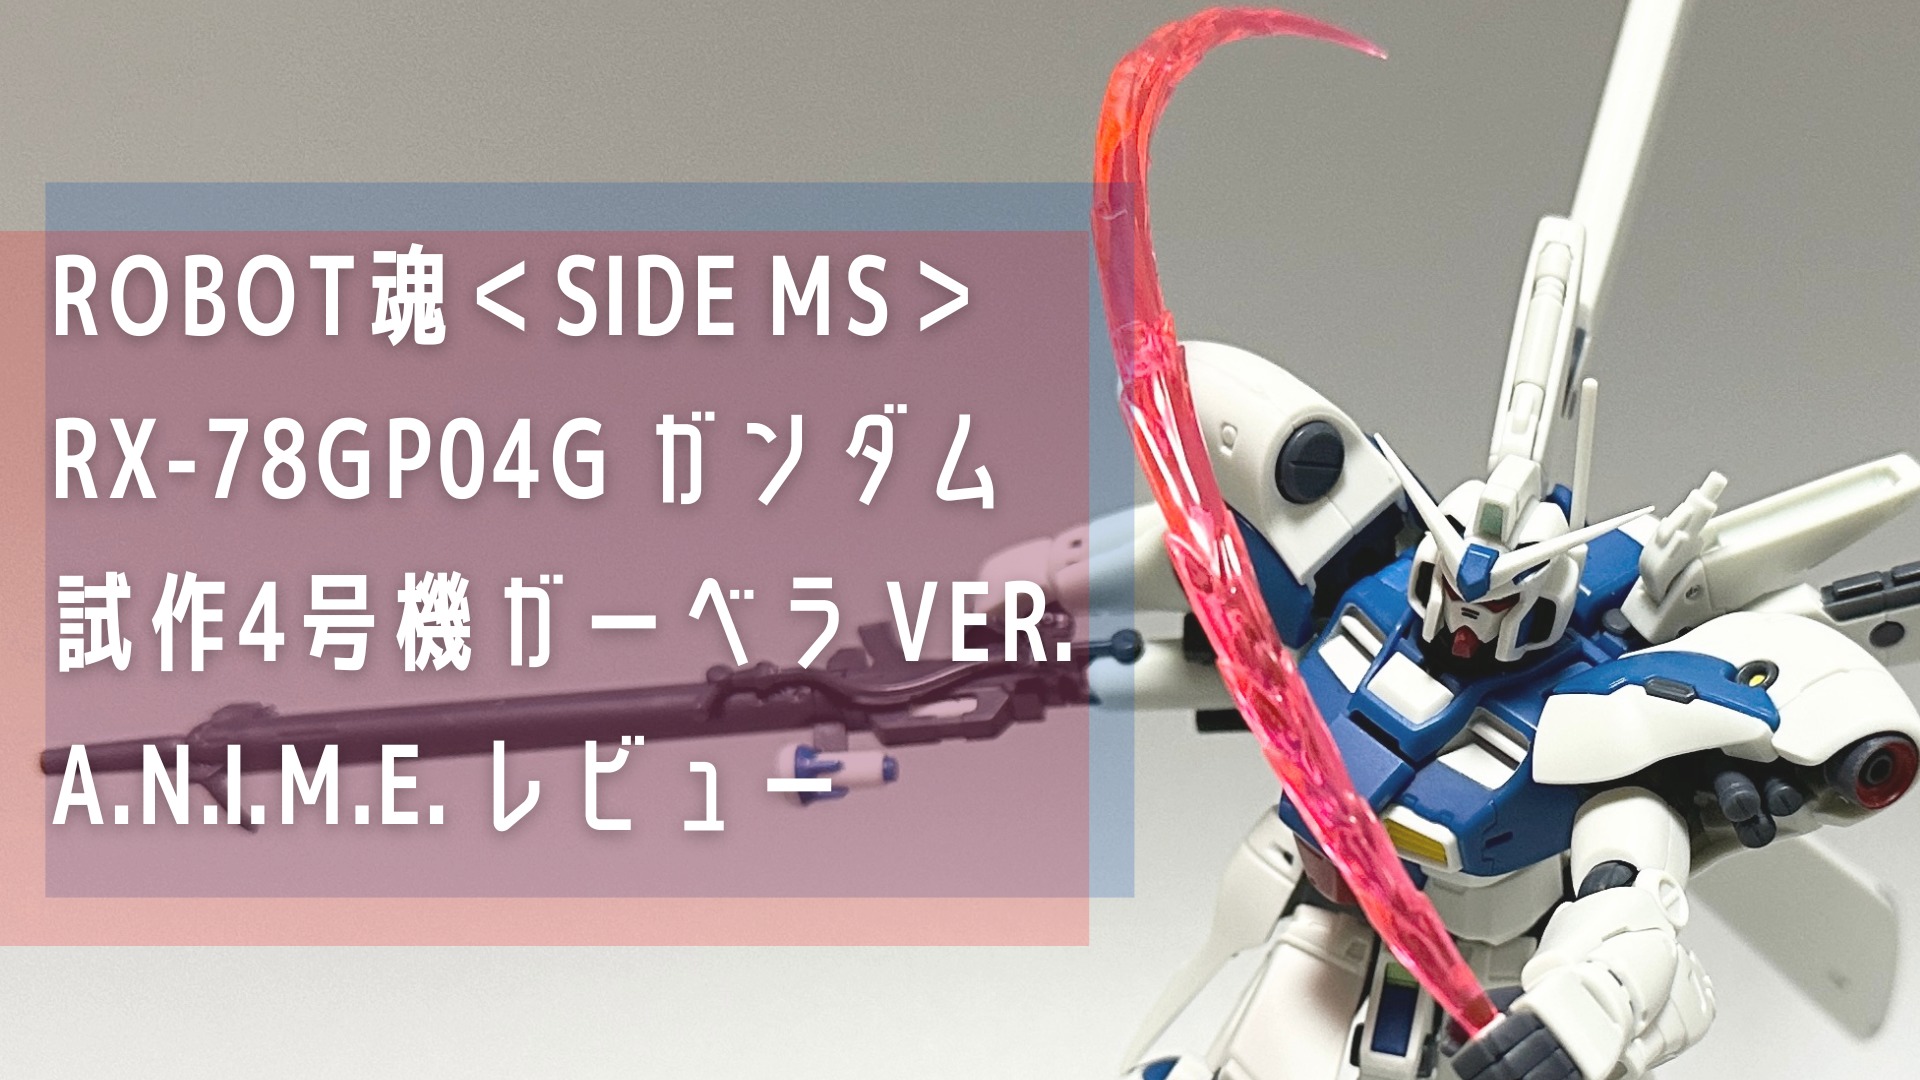 ROBOT魂＜SIDE MS＞ RX-78GP04G ガンダム試作4号機ガーベラ ver